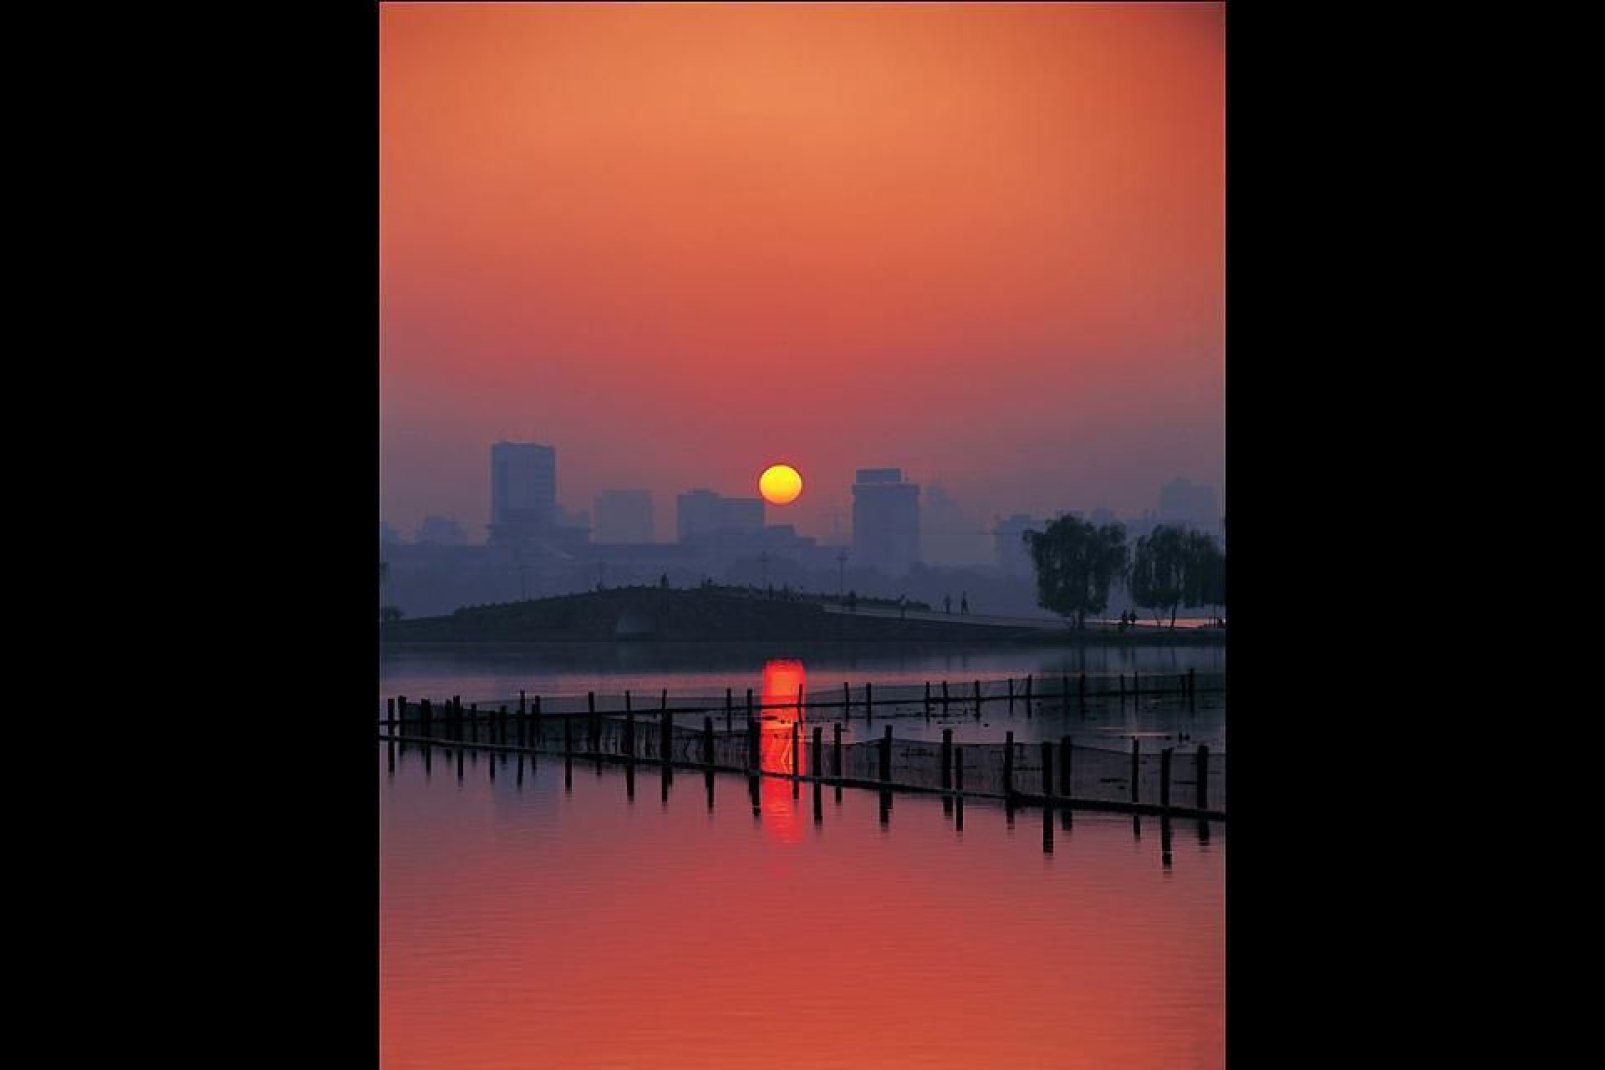 Der Sonnenuntergang über Hangzhou, eine Stadt im Delta des Jangtse-Flusses, ungefähr 140 km südöstlich von Shanghai.